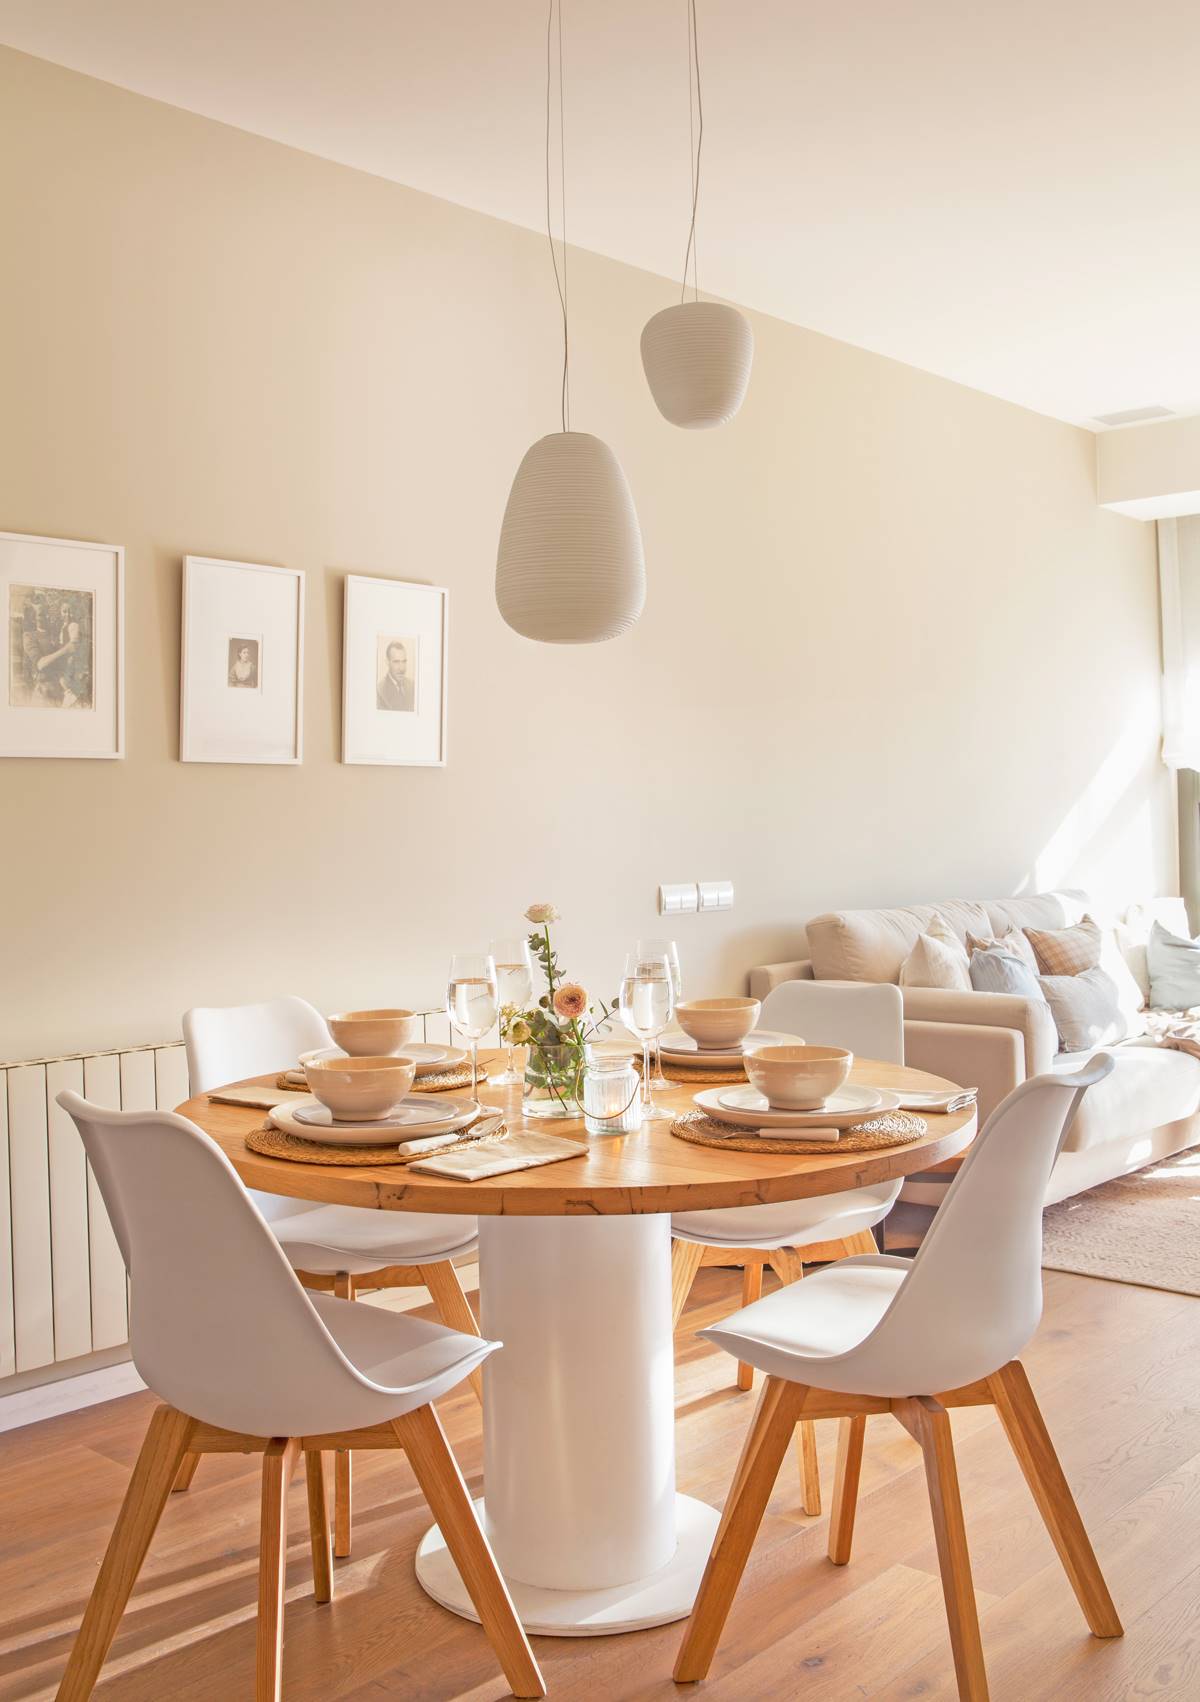 Mesa de comedor redonda combinada con sillas de estilo nórdico. 